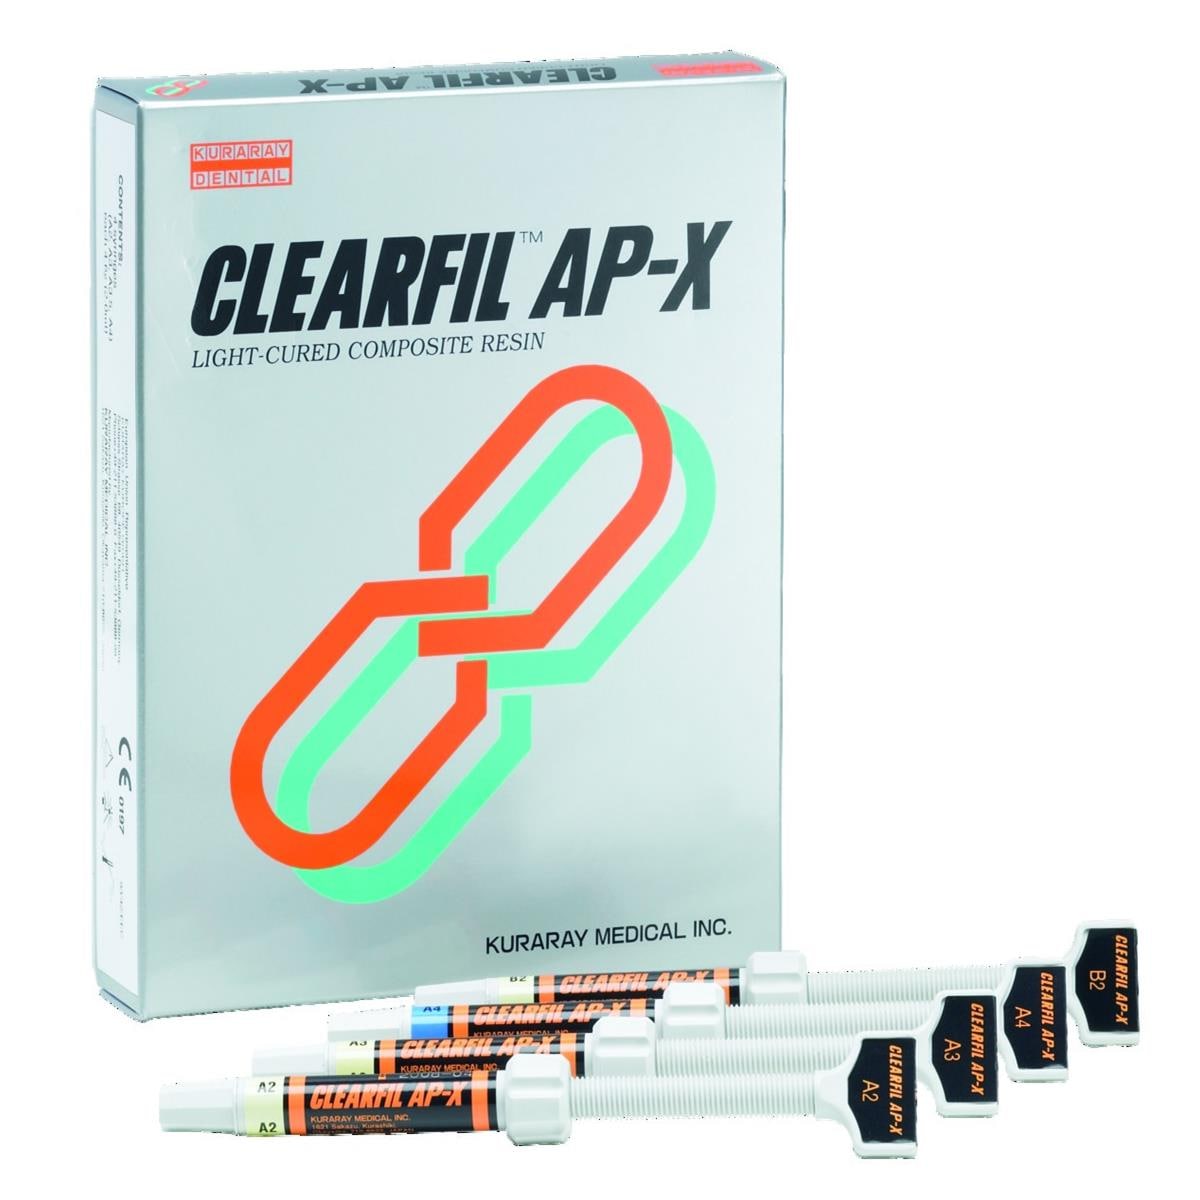 Clearfil AP-X KURARAY - A4 - Seringue de 4,6g